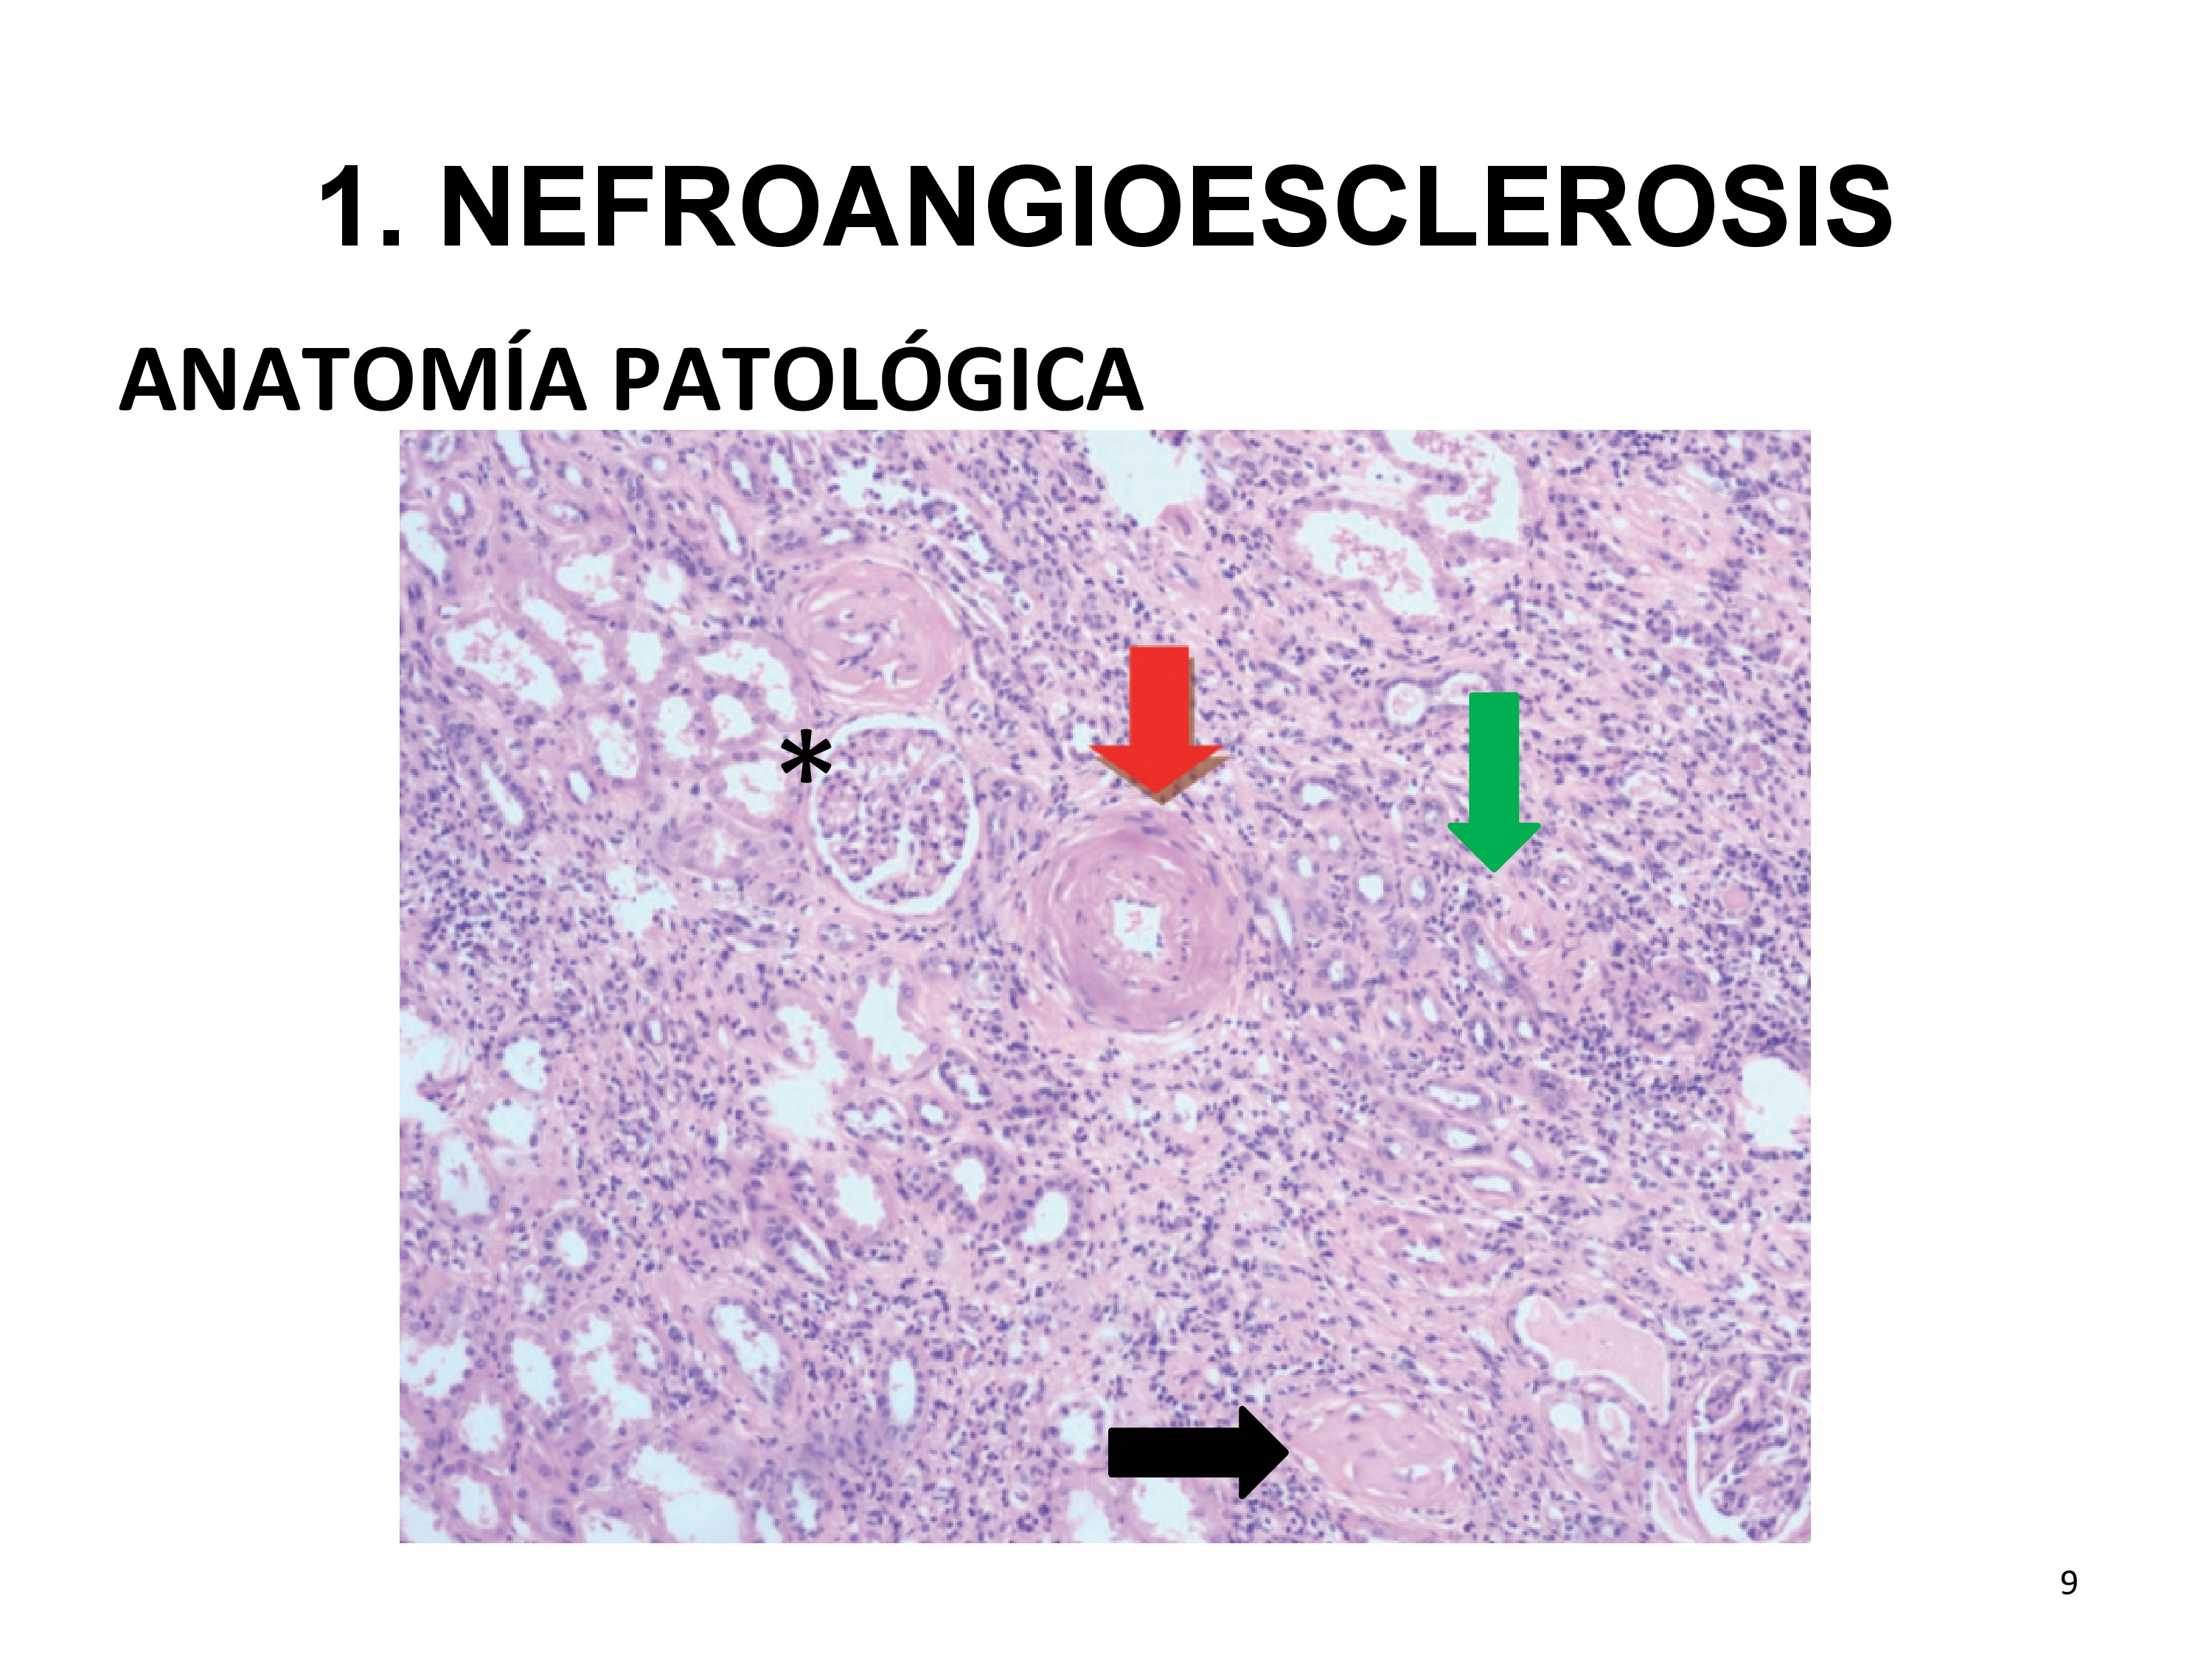 En los casos en los que se hace biopsia, la histología muestra datos inespecíficos de isquemia renal mantenida, que pueden aparecer en otras nefropatías. Entre los hallazgos, hay que destacar la presencia de esclerosis glomerular (flecha negra, compárese con un glomérulo normal marcado con asterisco), atrofia tubulointersticial (flecha verde) e hipertrofia de las paredes vasculares (flecha roja).